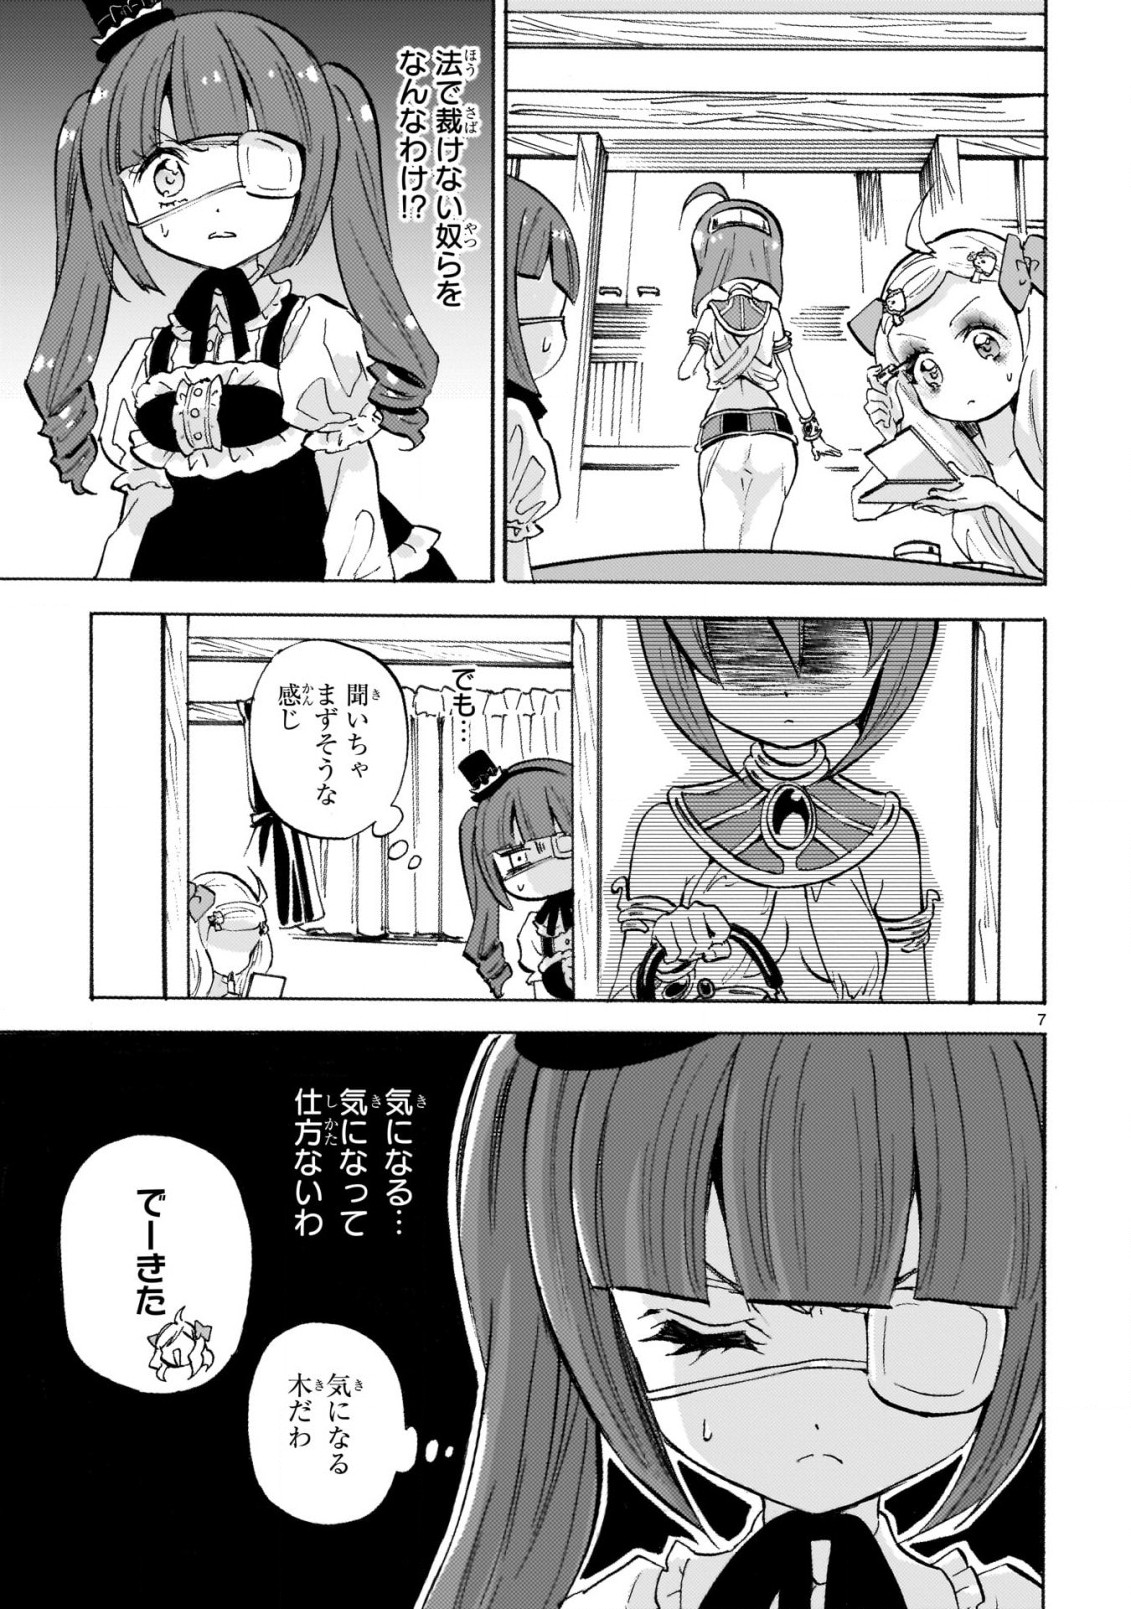 Jashin-chan Dropkick - Chapter 236 - Page 7